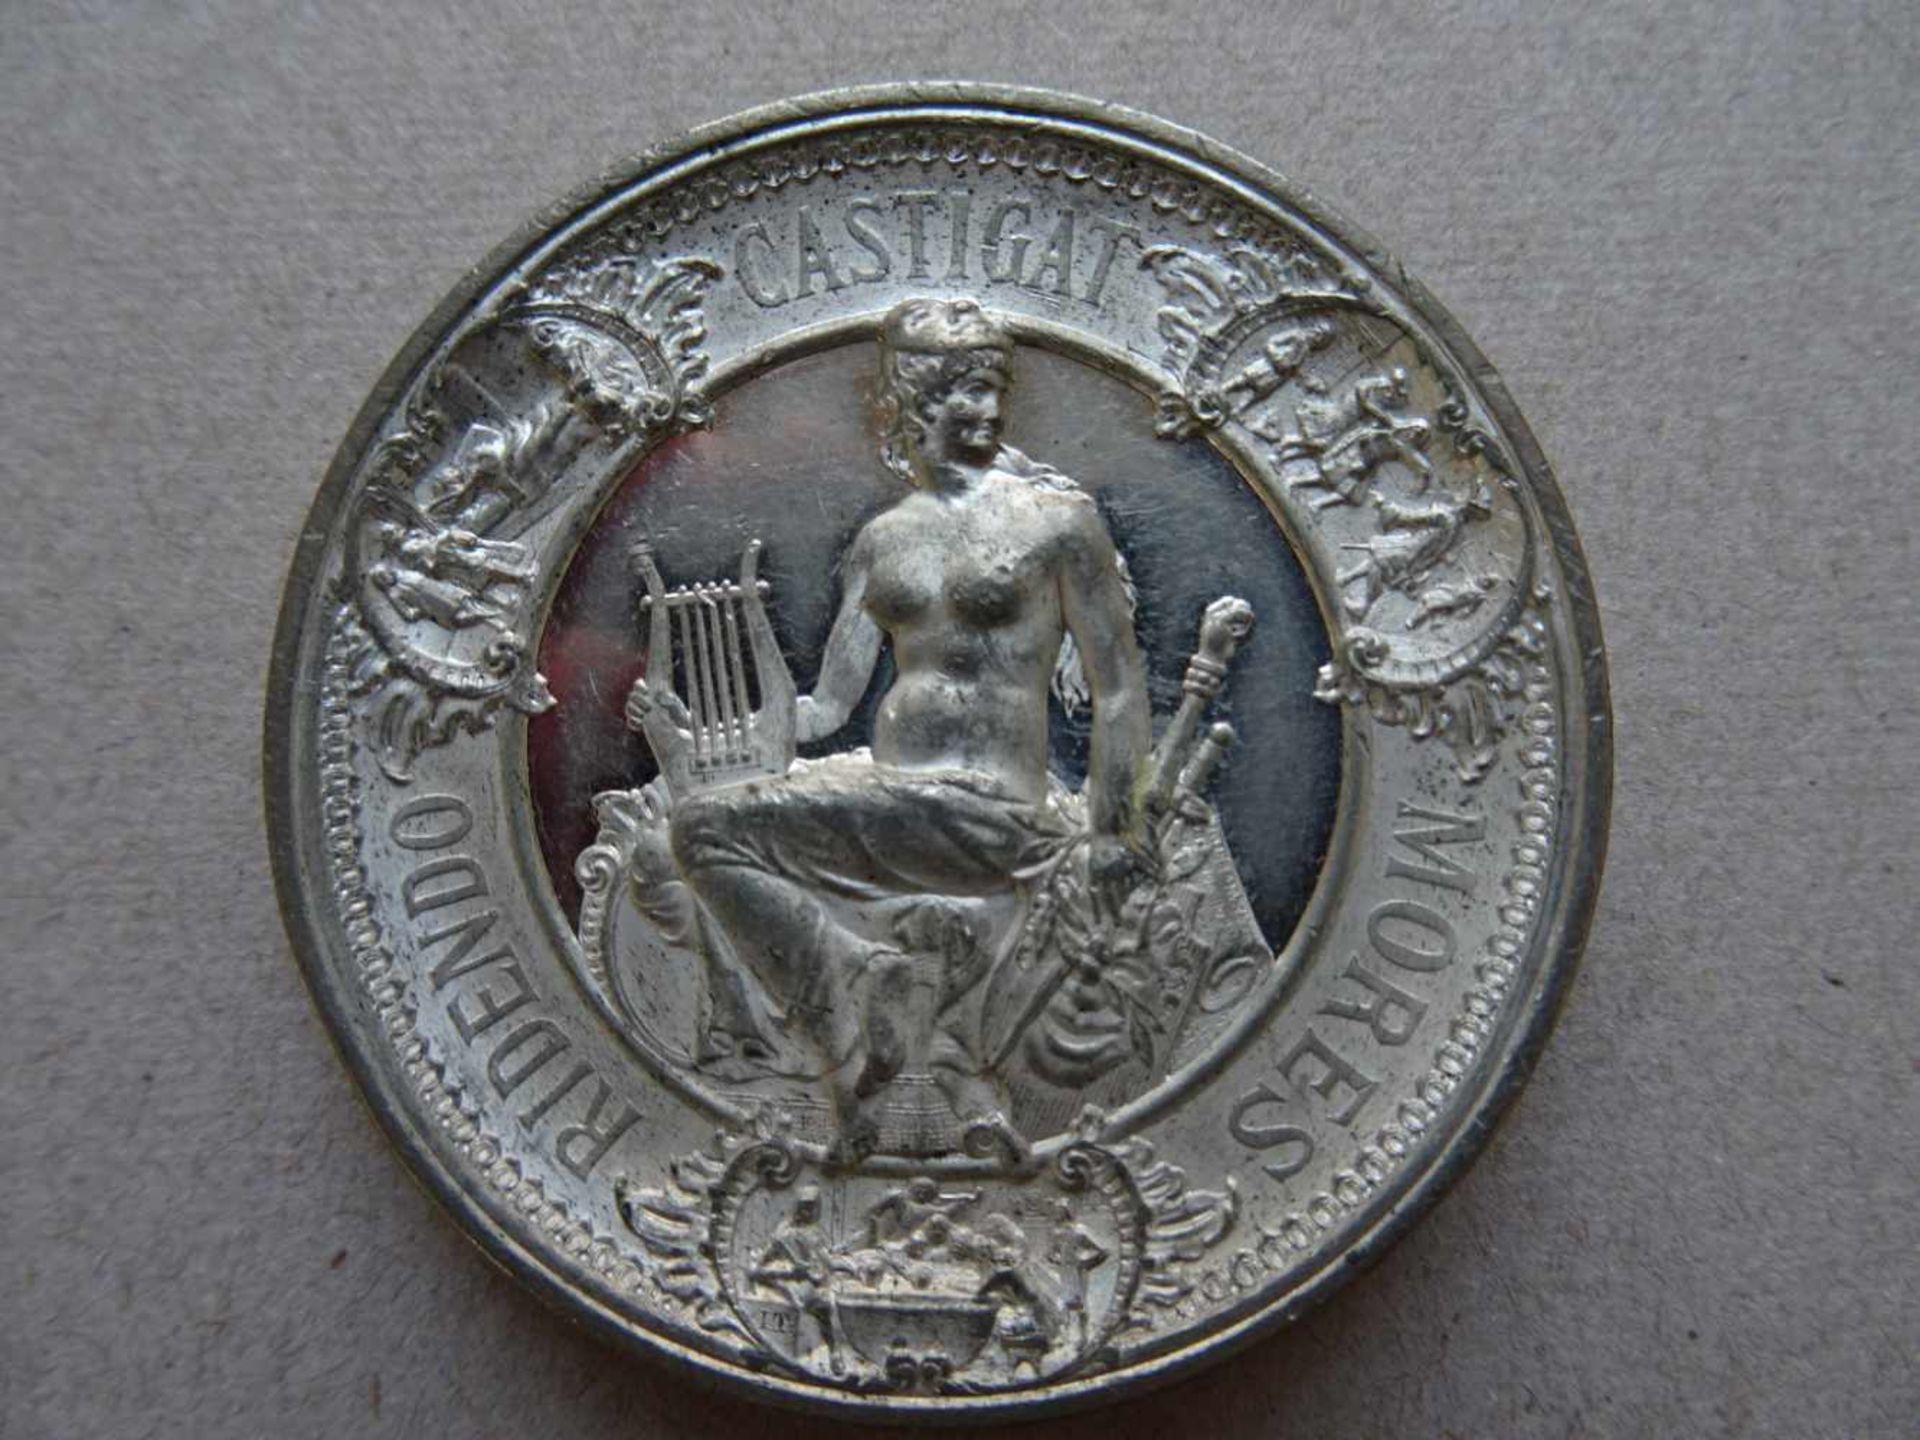 Medaille.-Ludvig Holberg. Zinn-Medaille anläßlich des 200. Geburtstages am 3. Dez. 1884. Medaille - Bild 2 aus 2